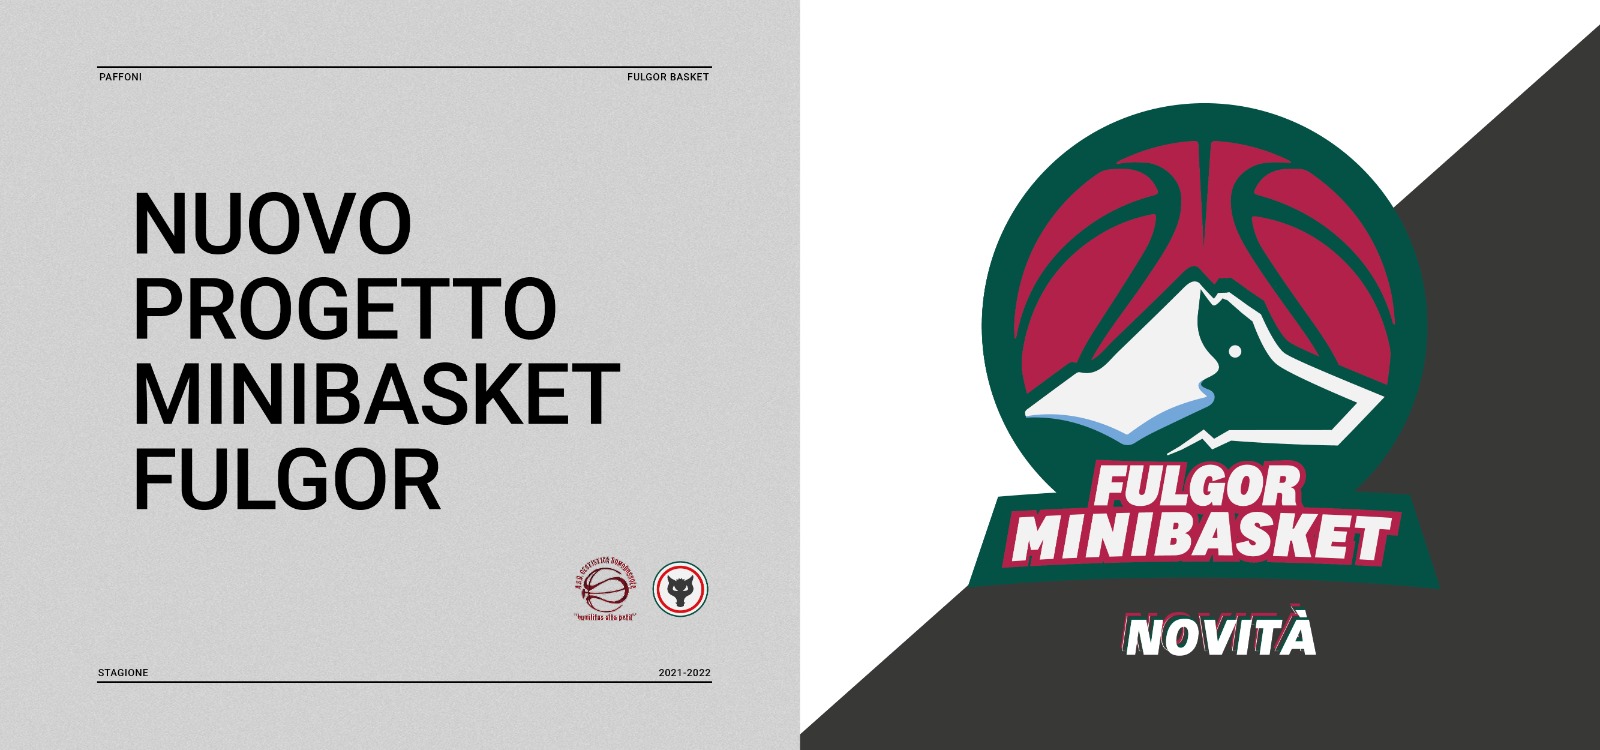 Nasce Fulgor minibasket: nel nostro territorio #giochiamodisquadra